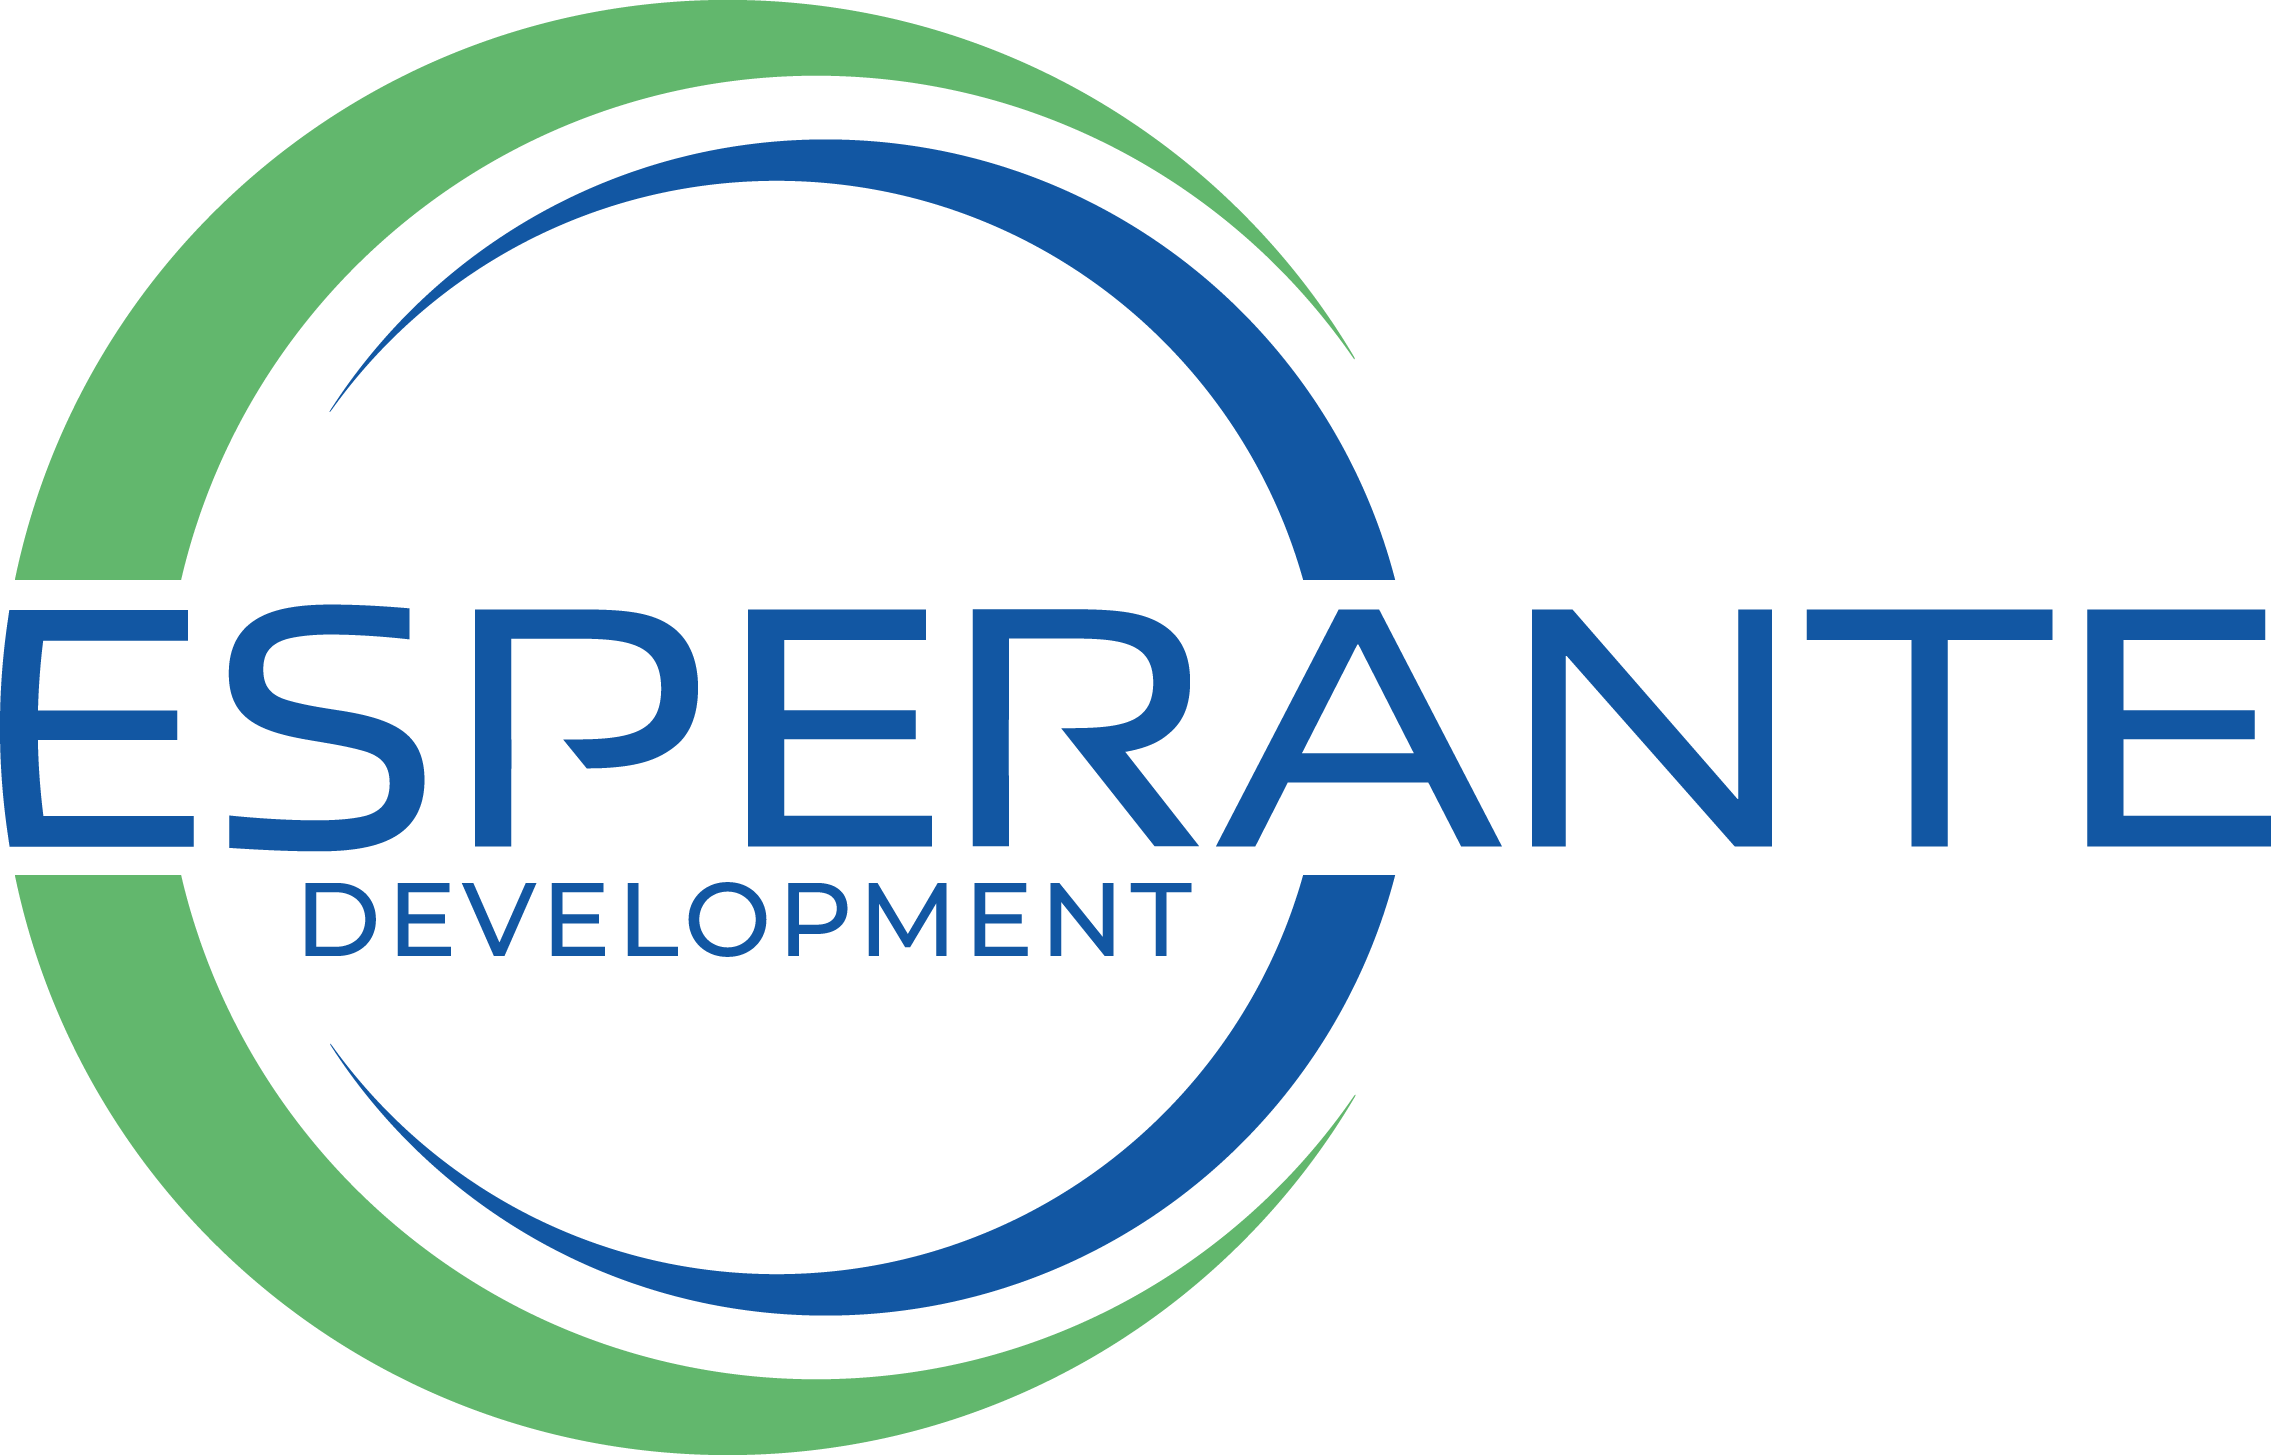 Esperante Development | We dare to be different